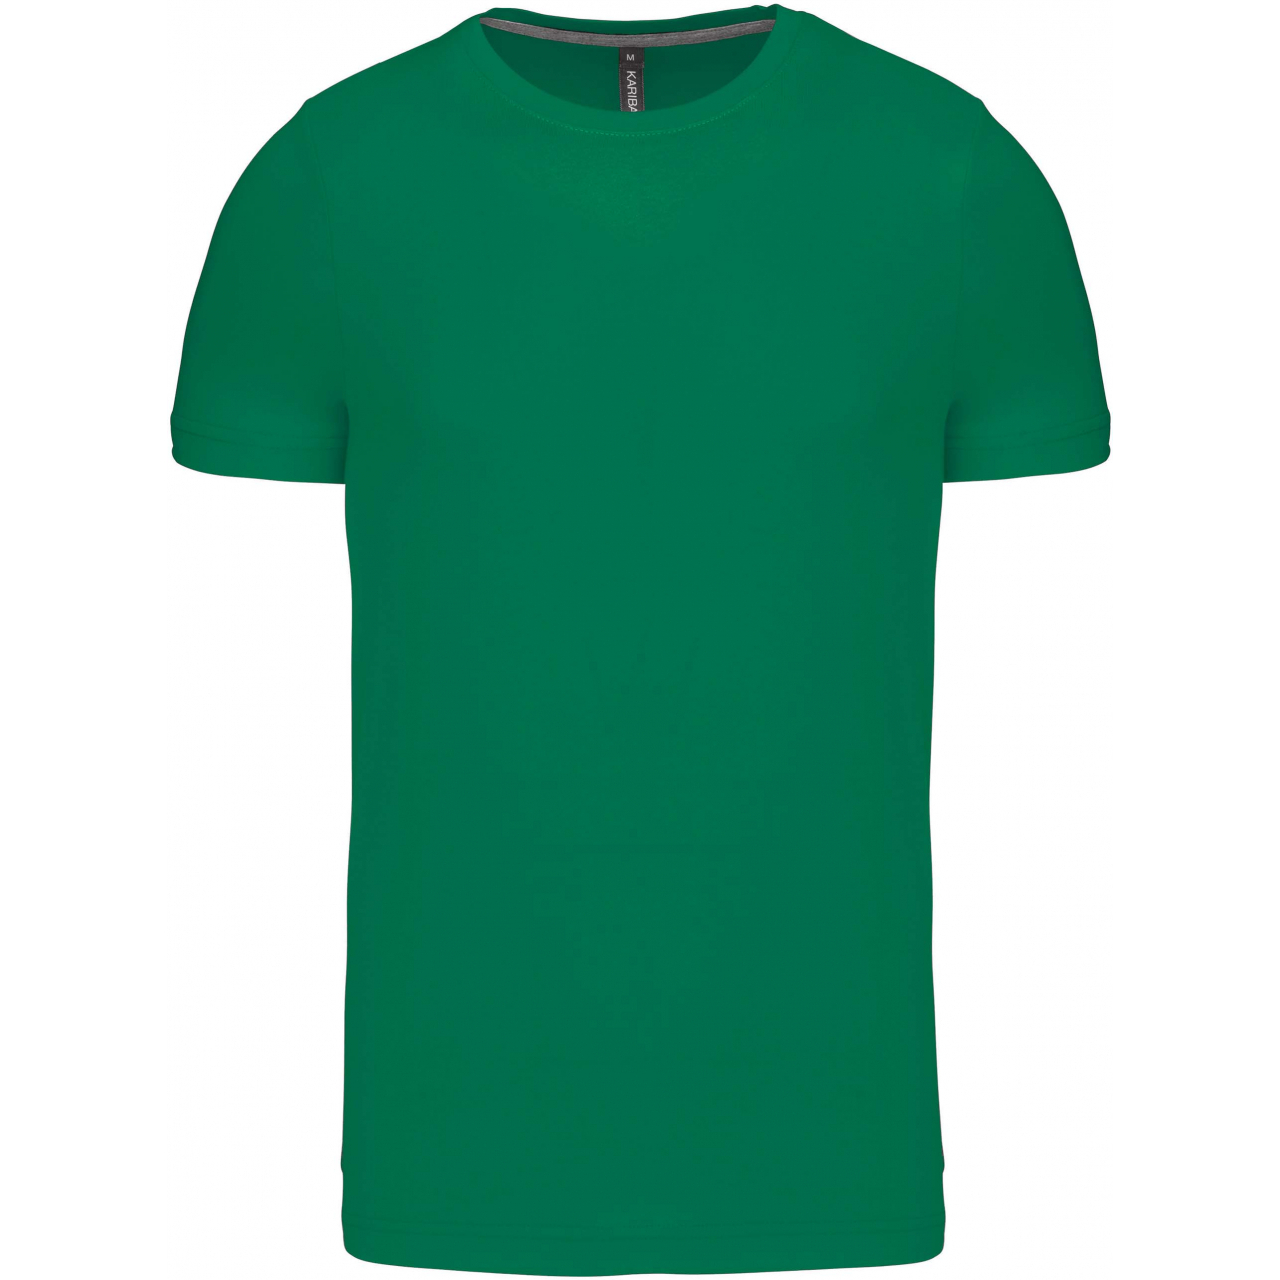 Pánské tričko Kariban krátký rukáv - zelené, L